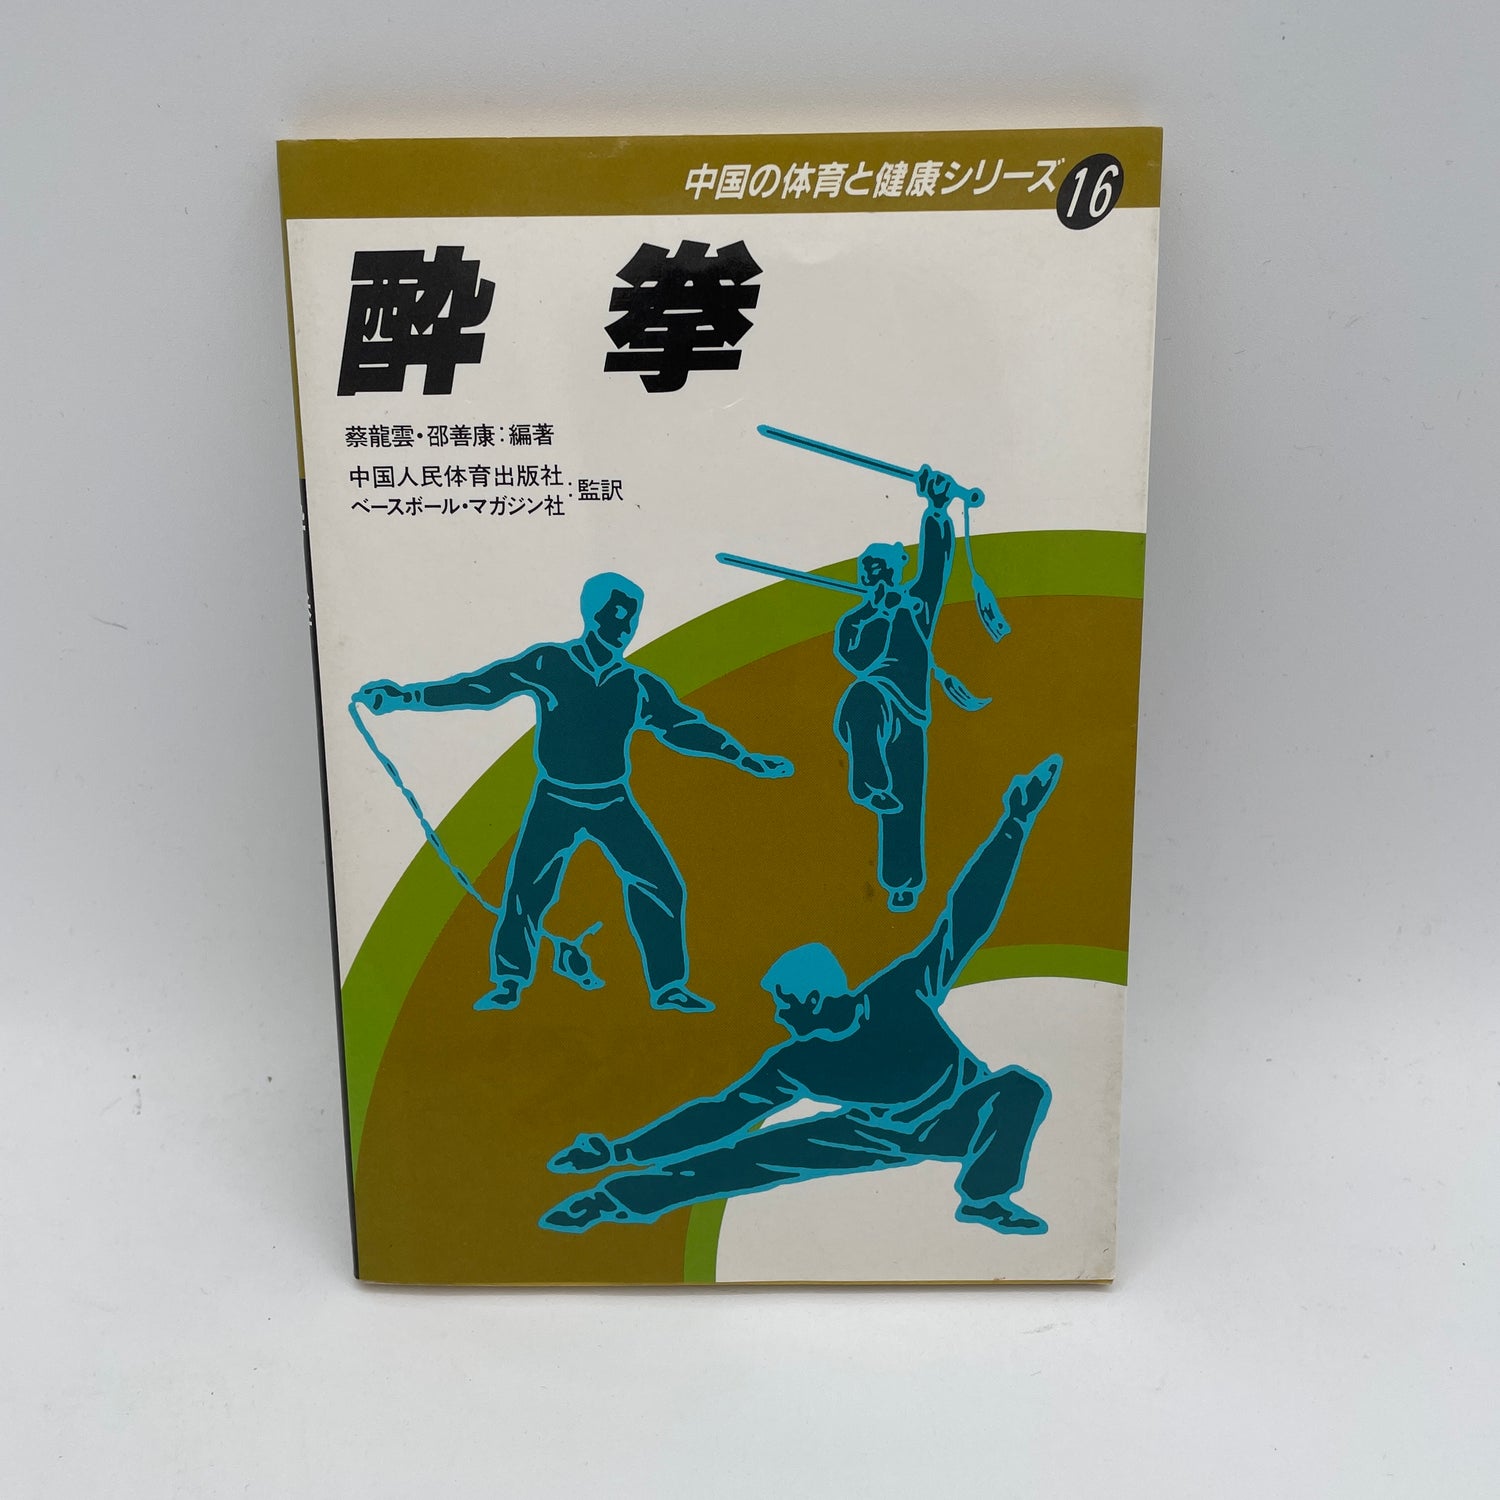 Yoi Ken (Drunken Kung Fu): Libro n.º 16 de la serie china de educación física y salud (seminuevo)